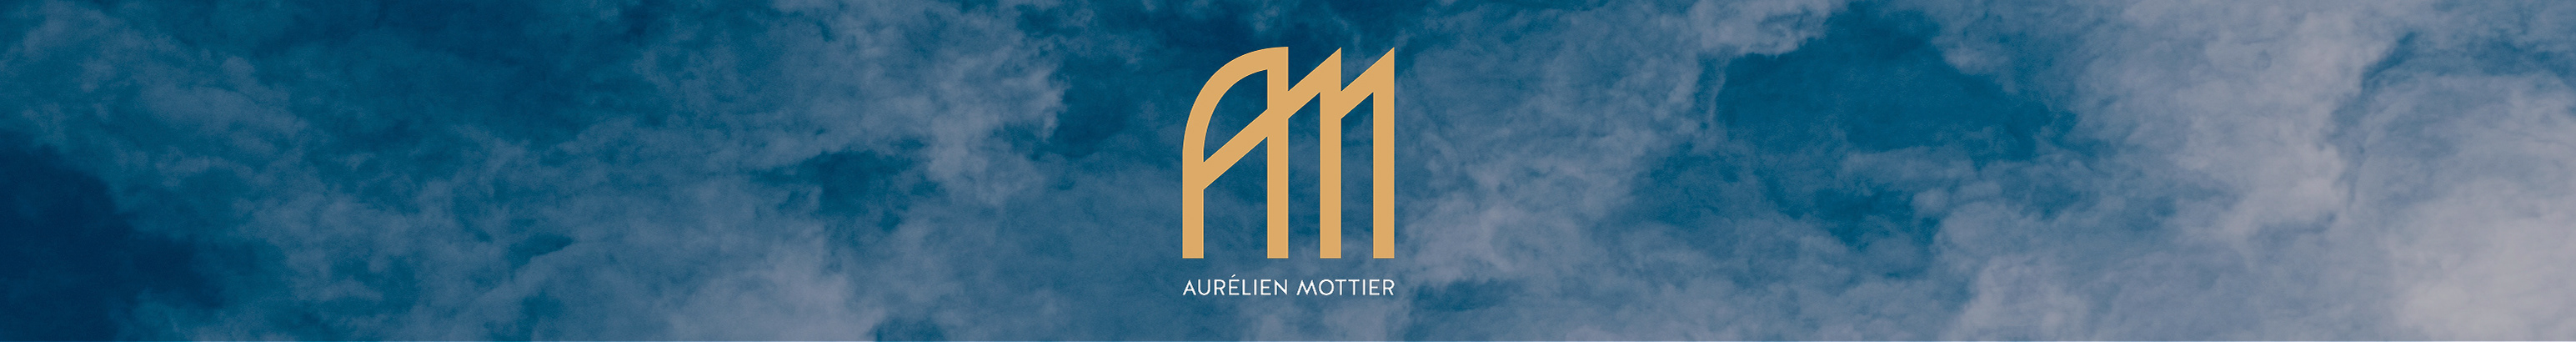 Bannière de profil de Aurélien Mottier